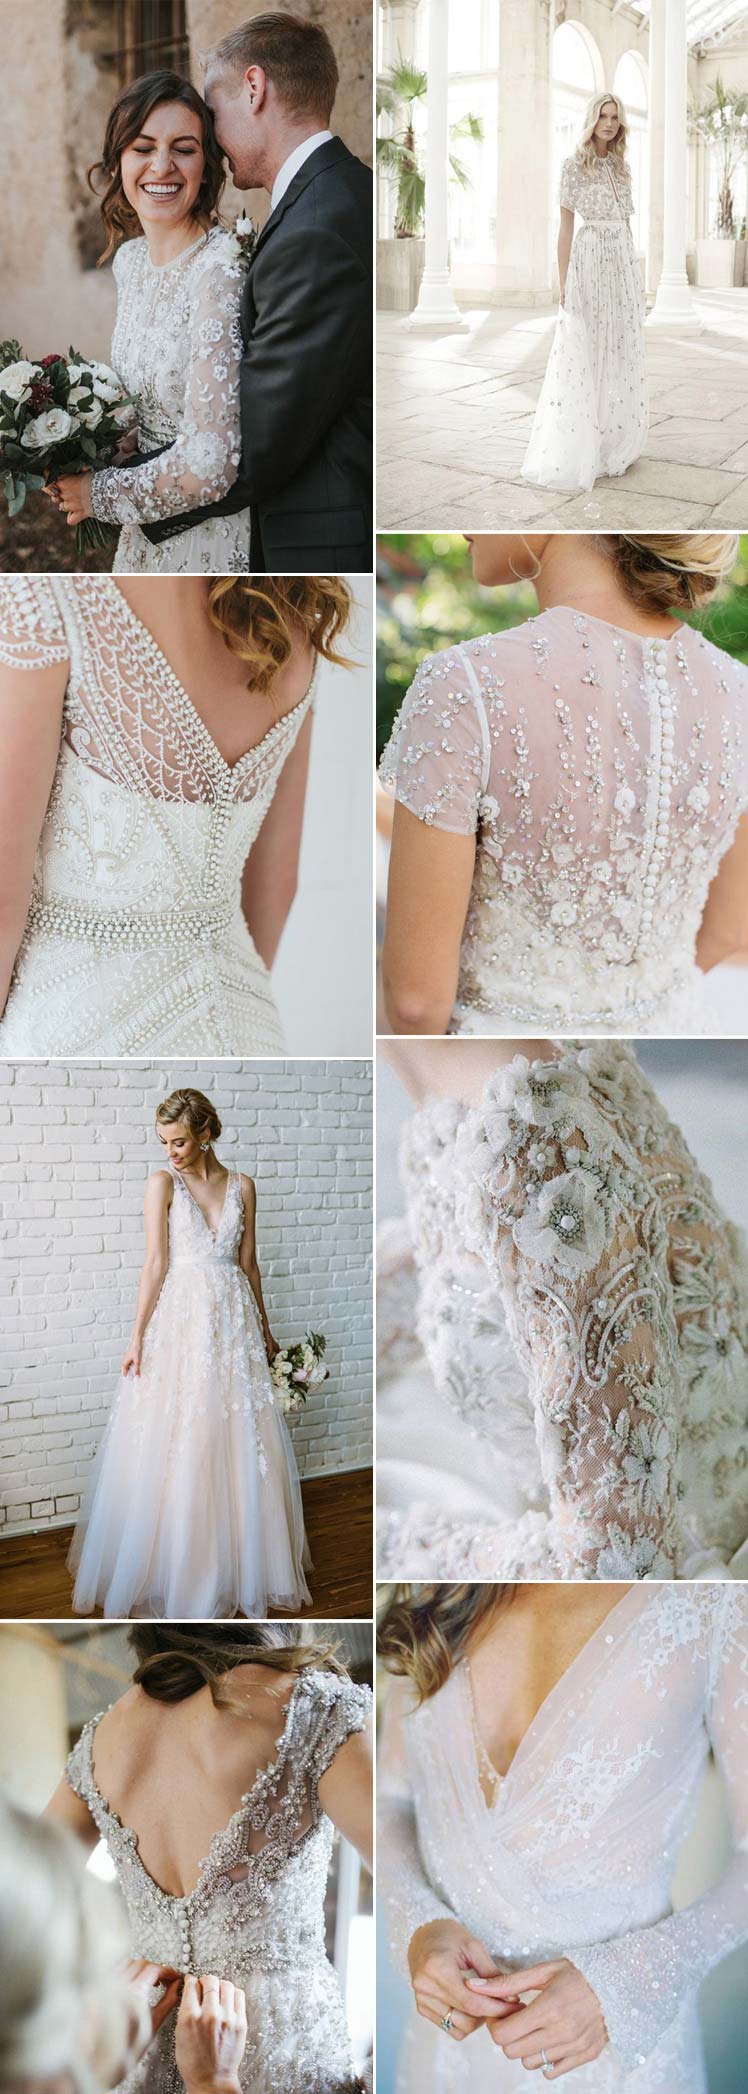 Embellished and detailed wedding dresses